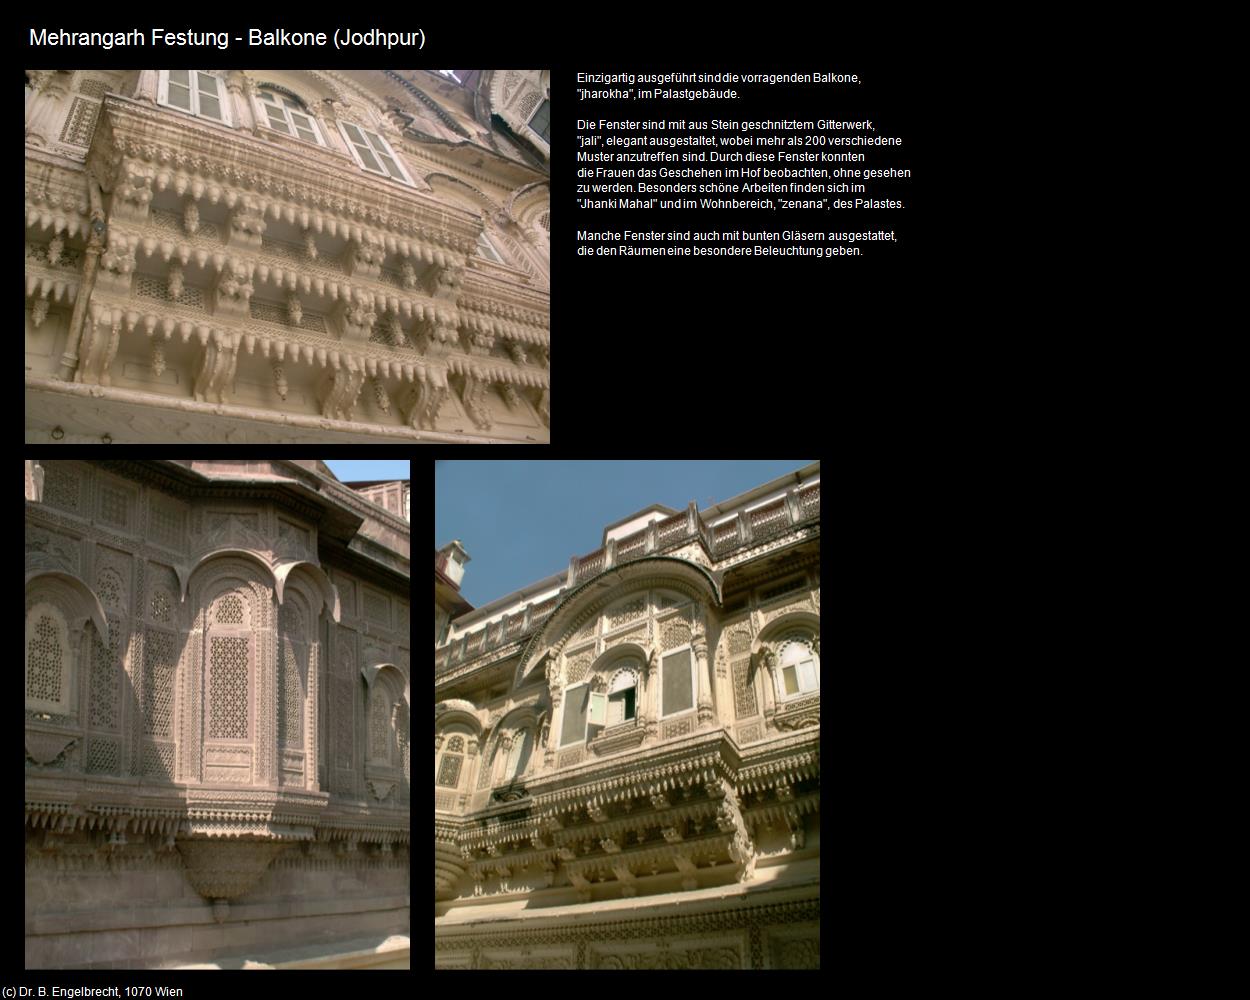 Mehrangarh Festung-Balkone (Jodhpur) in Rajasthan - das Land der Könige